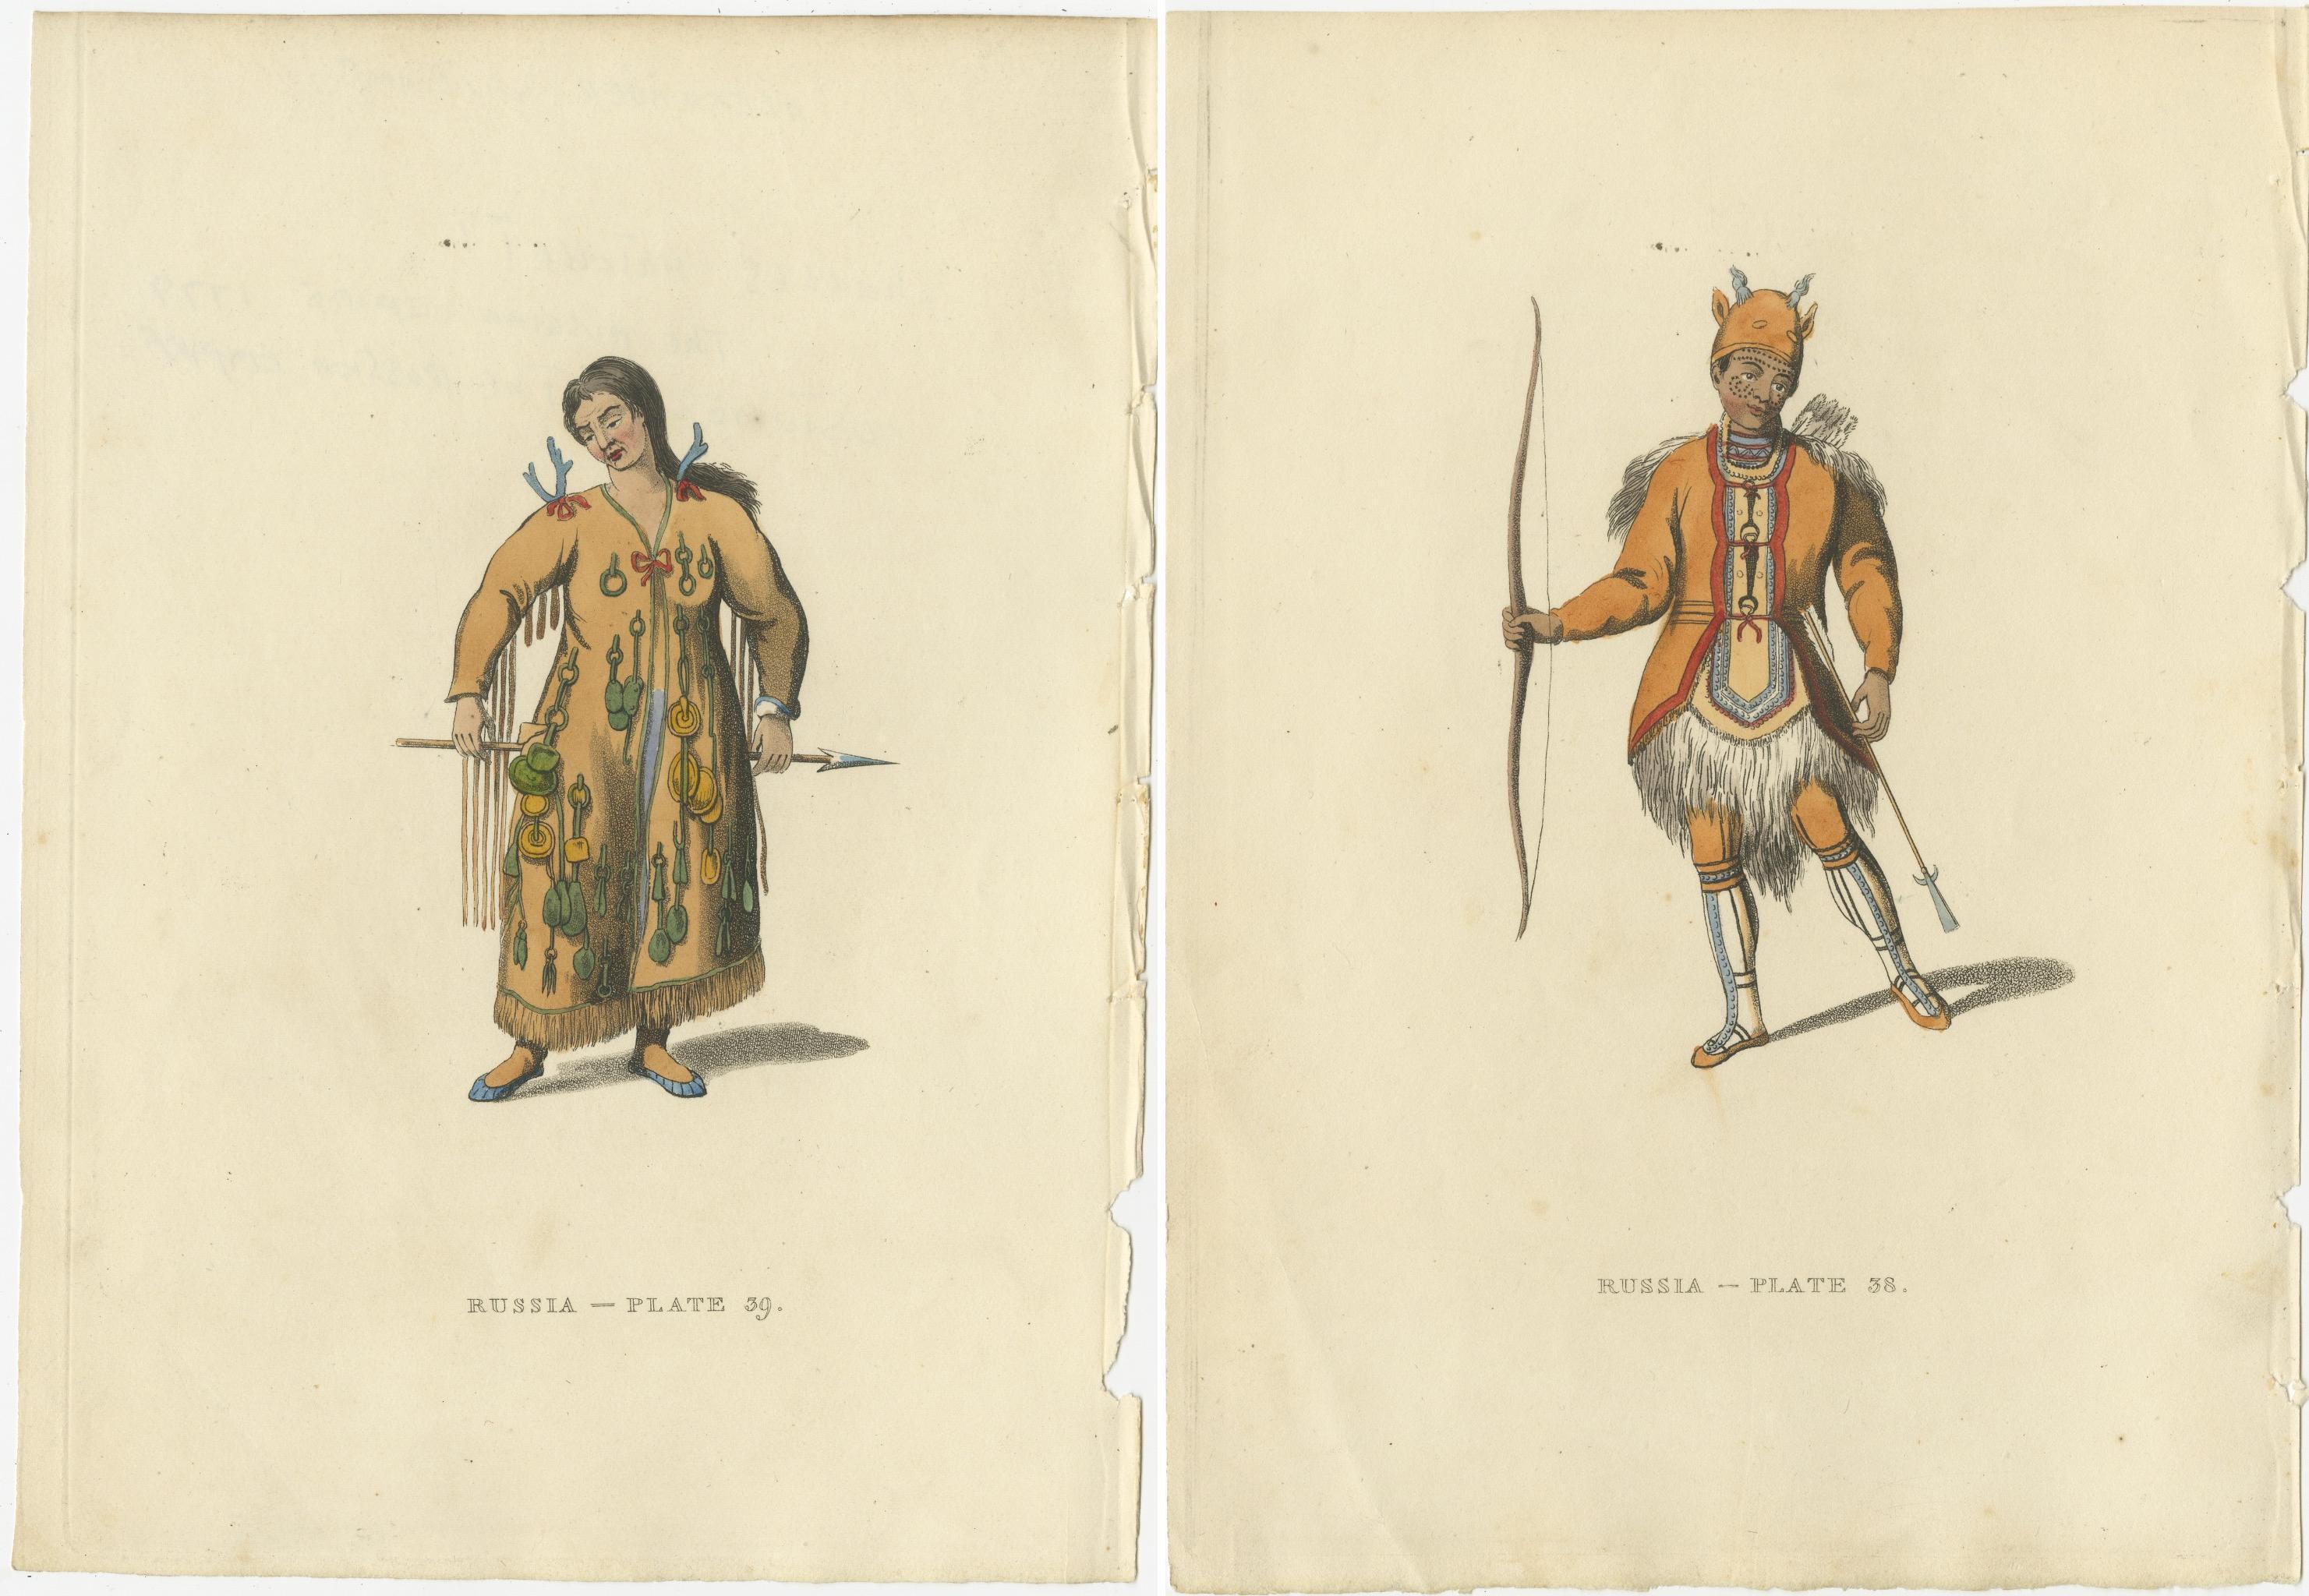 Die beiden Stiche zeigen anschaulich Angehörige der tungusischen Völker Sibiriens, die für ihre besonderen kulturellen Praktiken und ihre Kleidung bekannt sind.

1. Die Gravur 